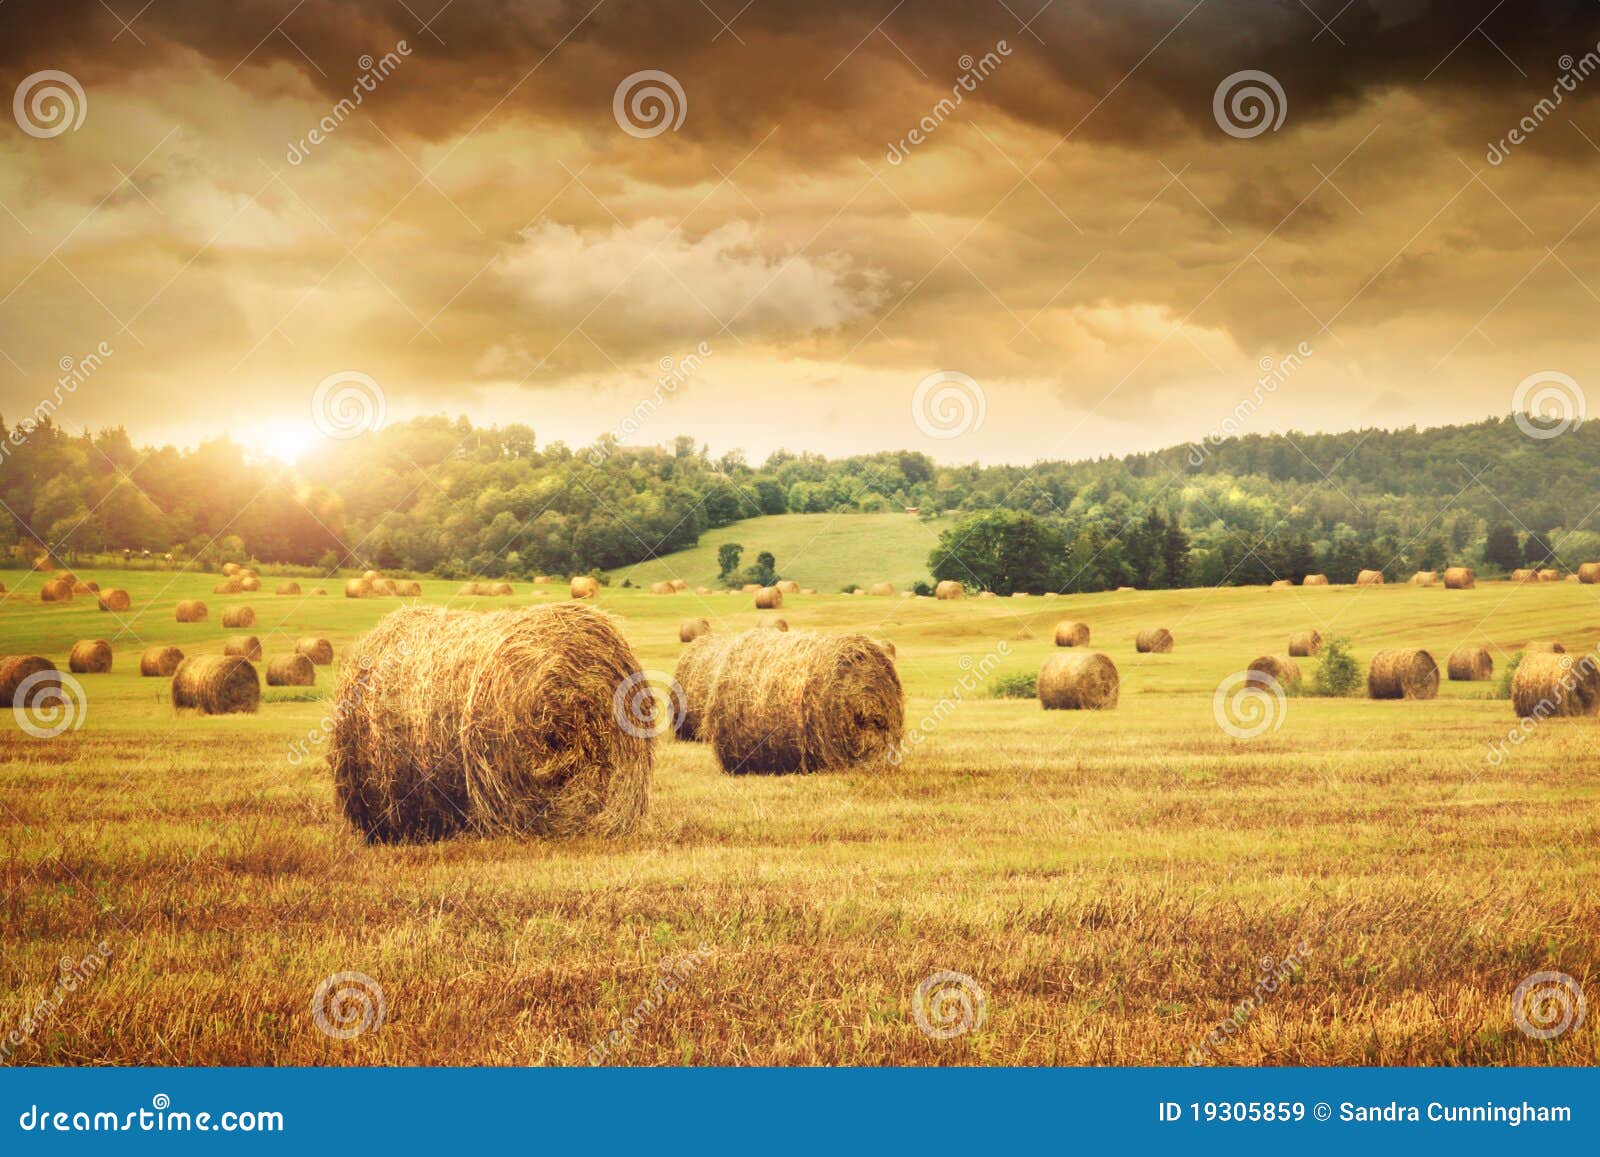 field of freshly bales of hay